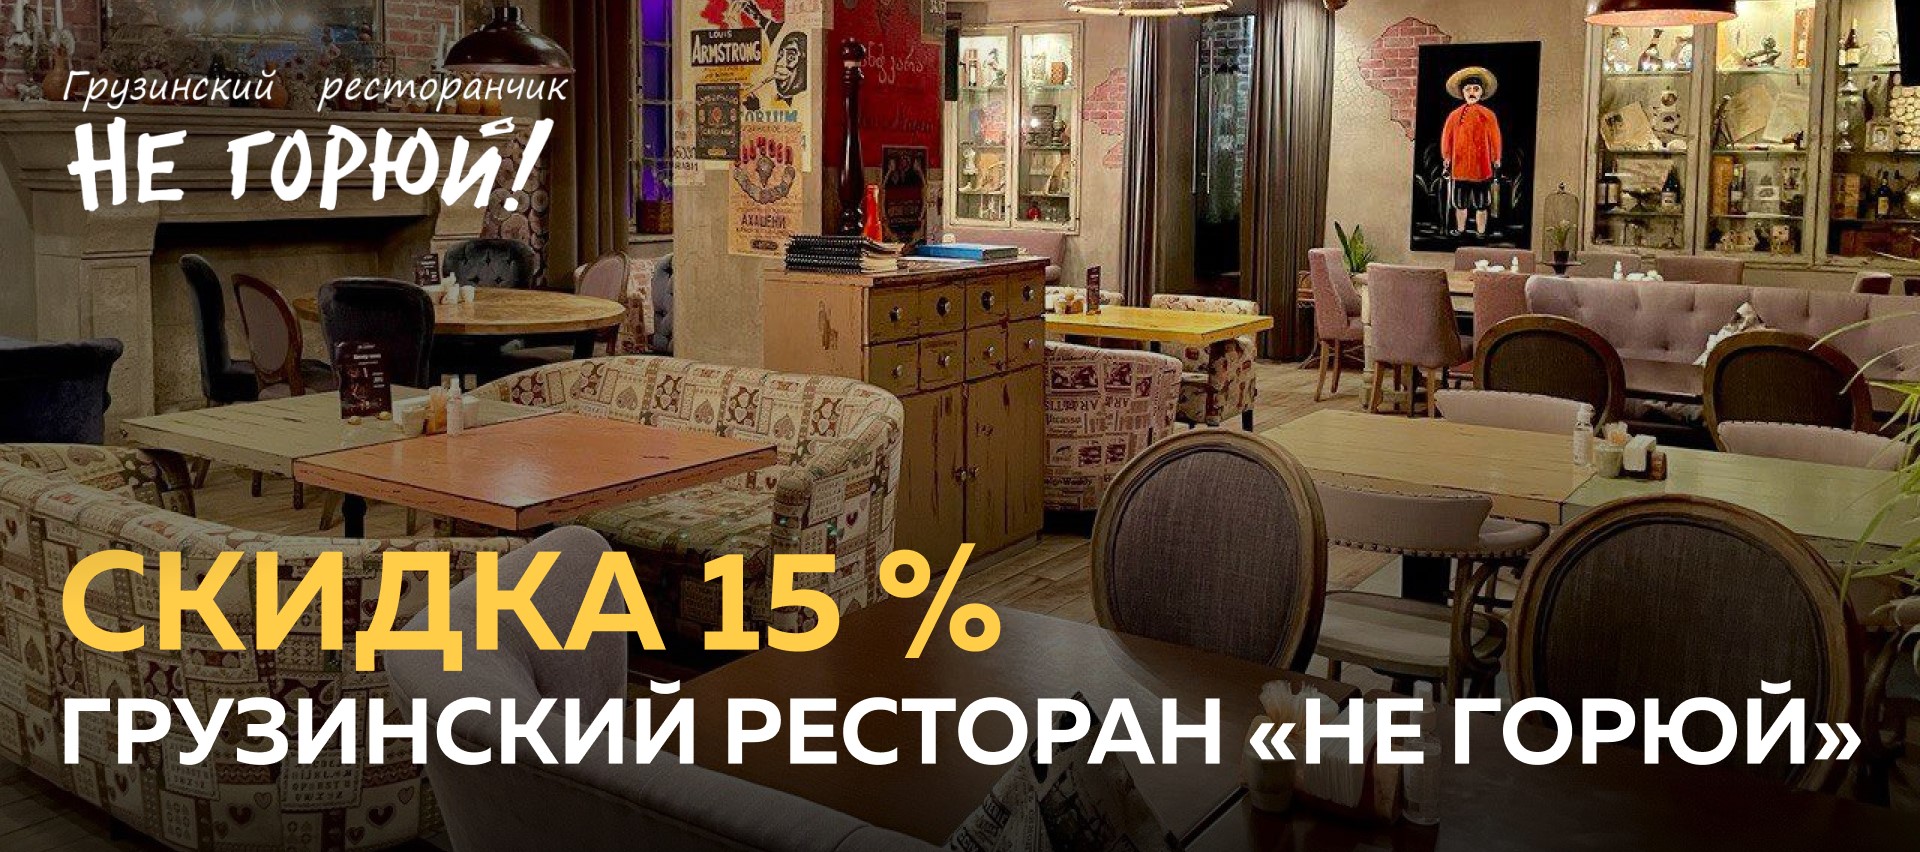 грузинский ресторан «Не горюй!»